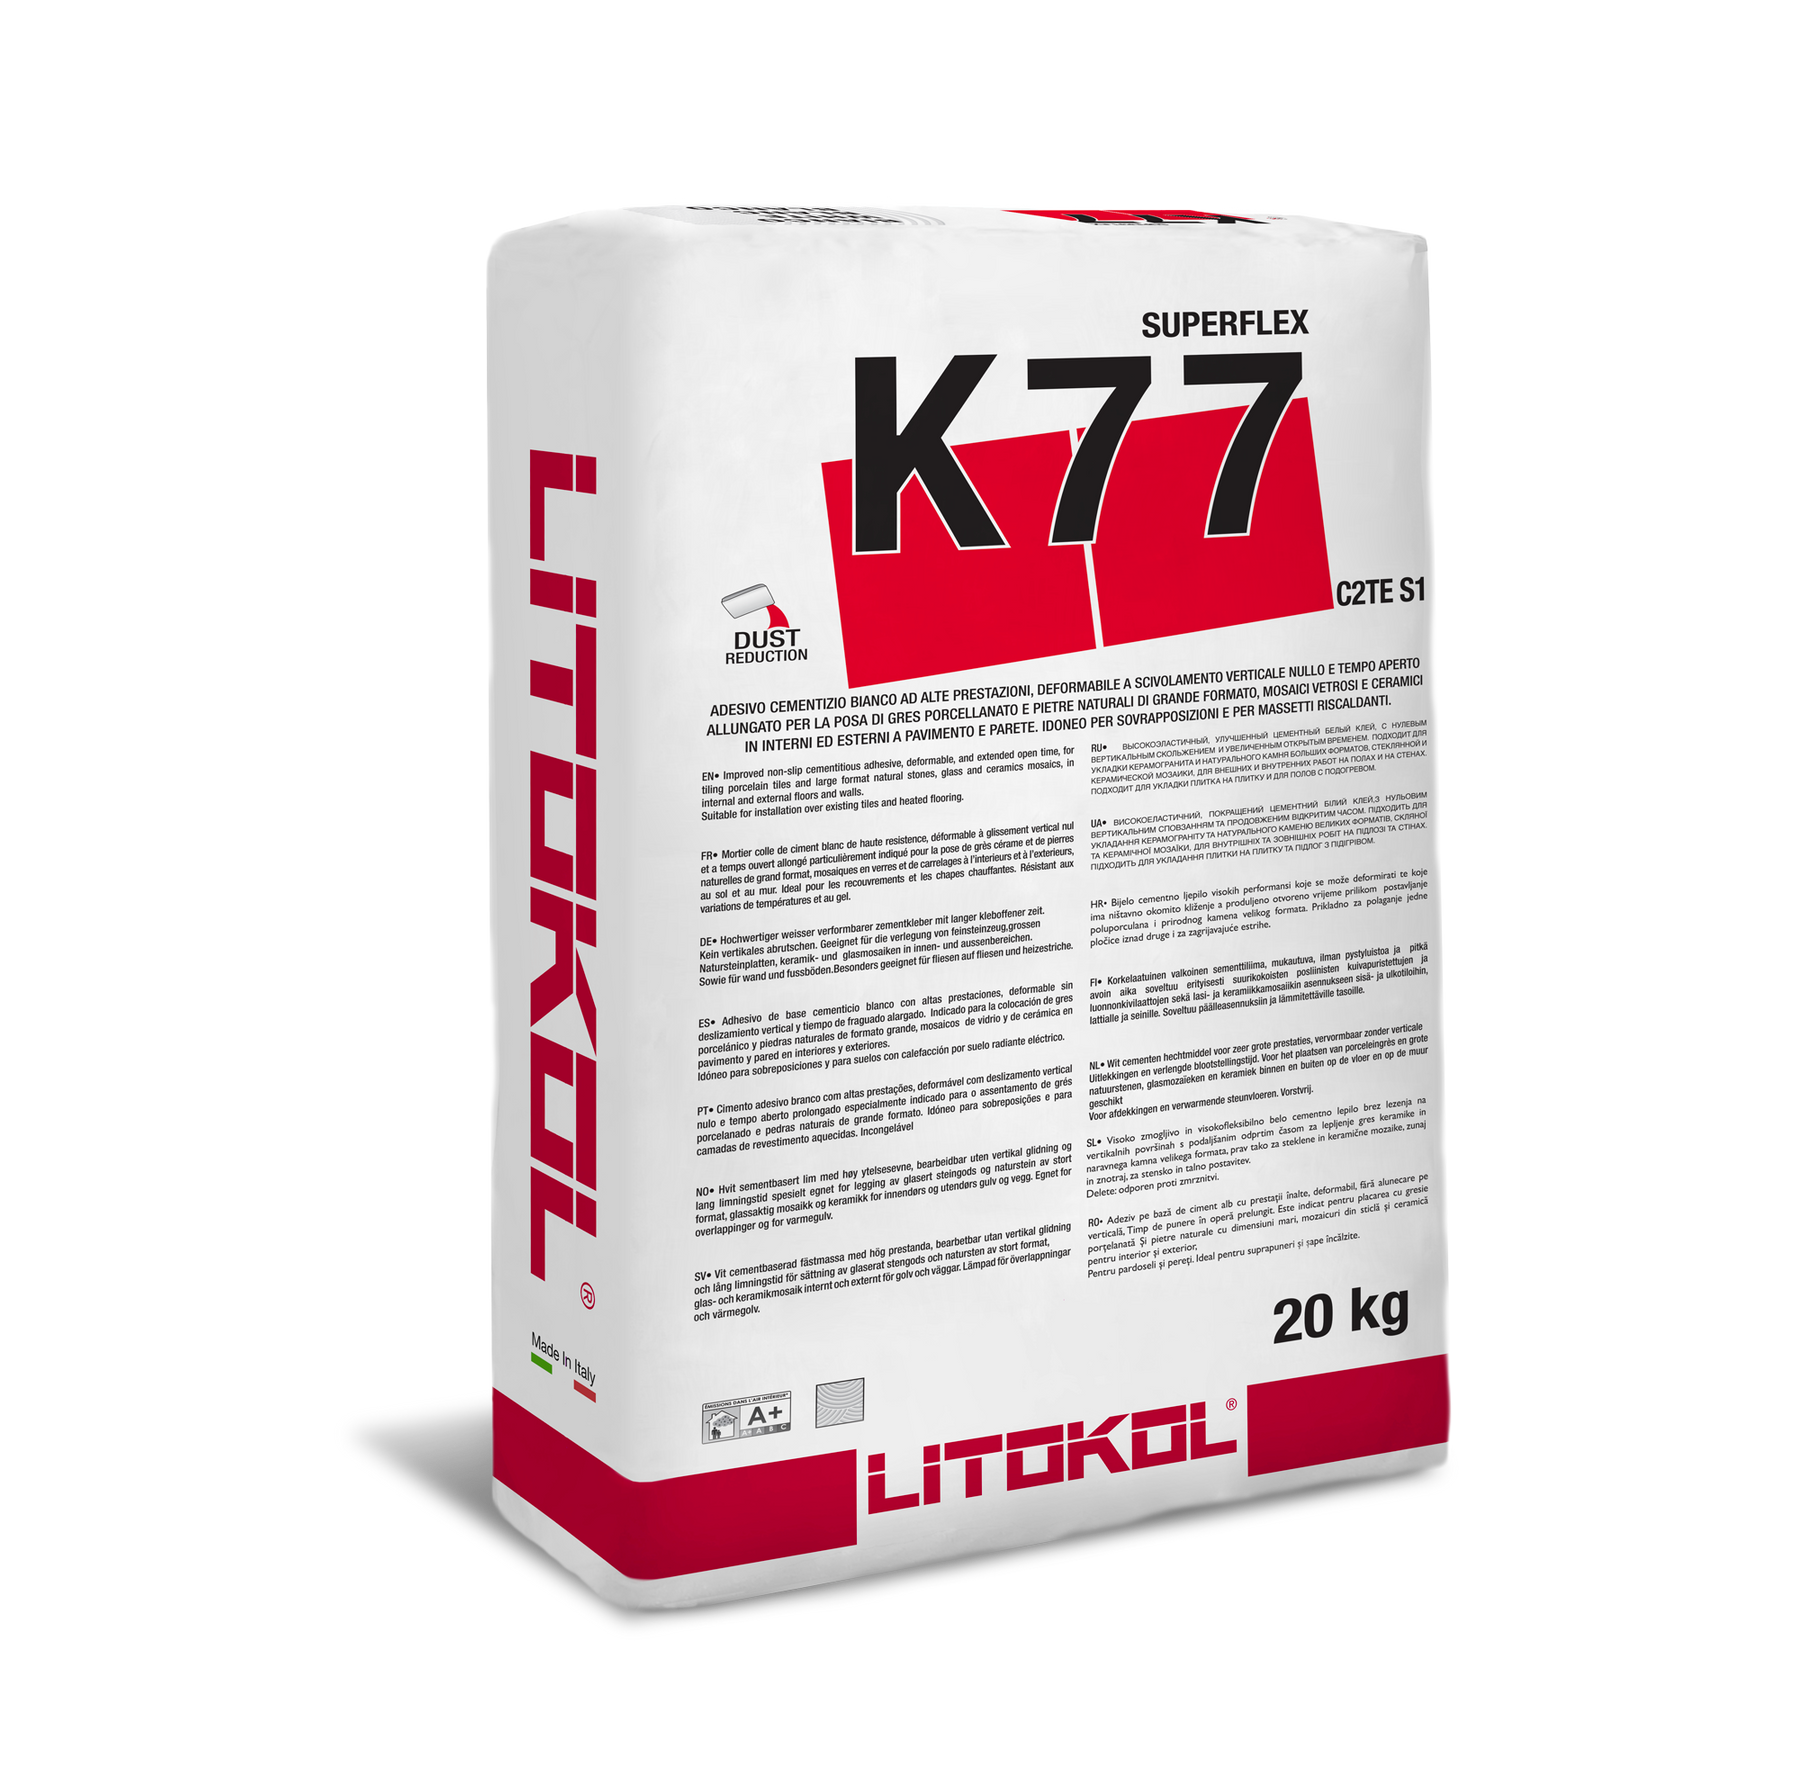 Litokol k77 Superflex. Клей для плитки Litokol Superflex k77. Клей Литокол к 77. Superflex k77 клеевая смесь. Герметик литокол